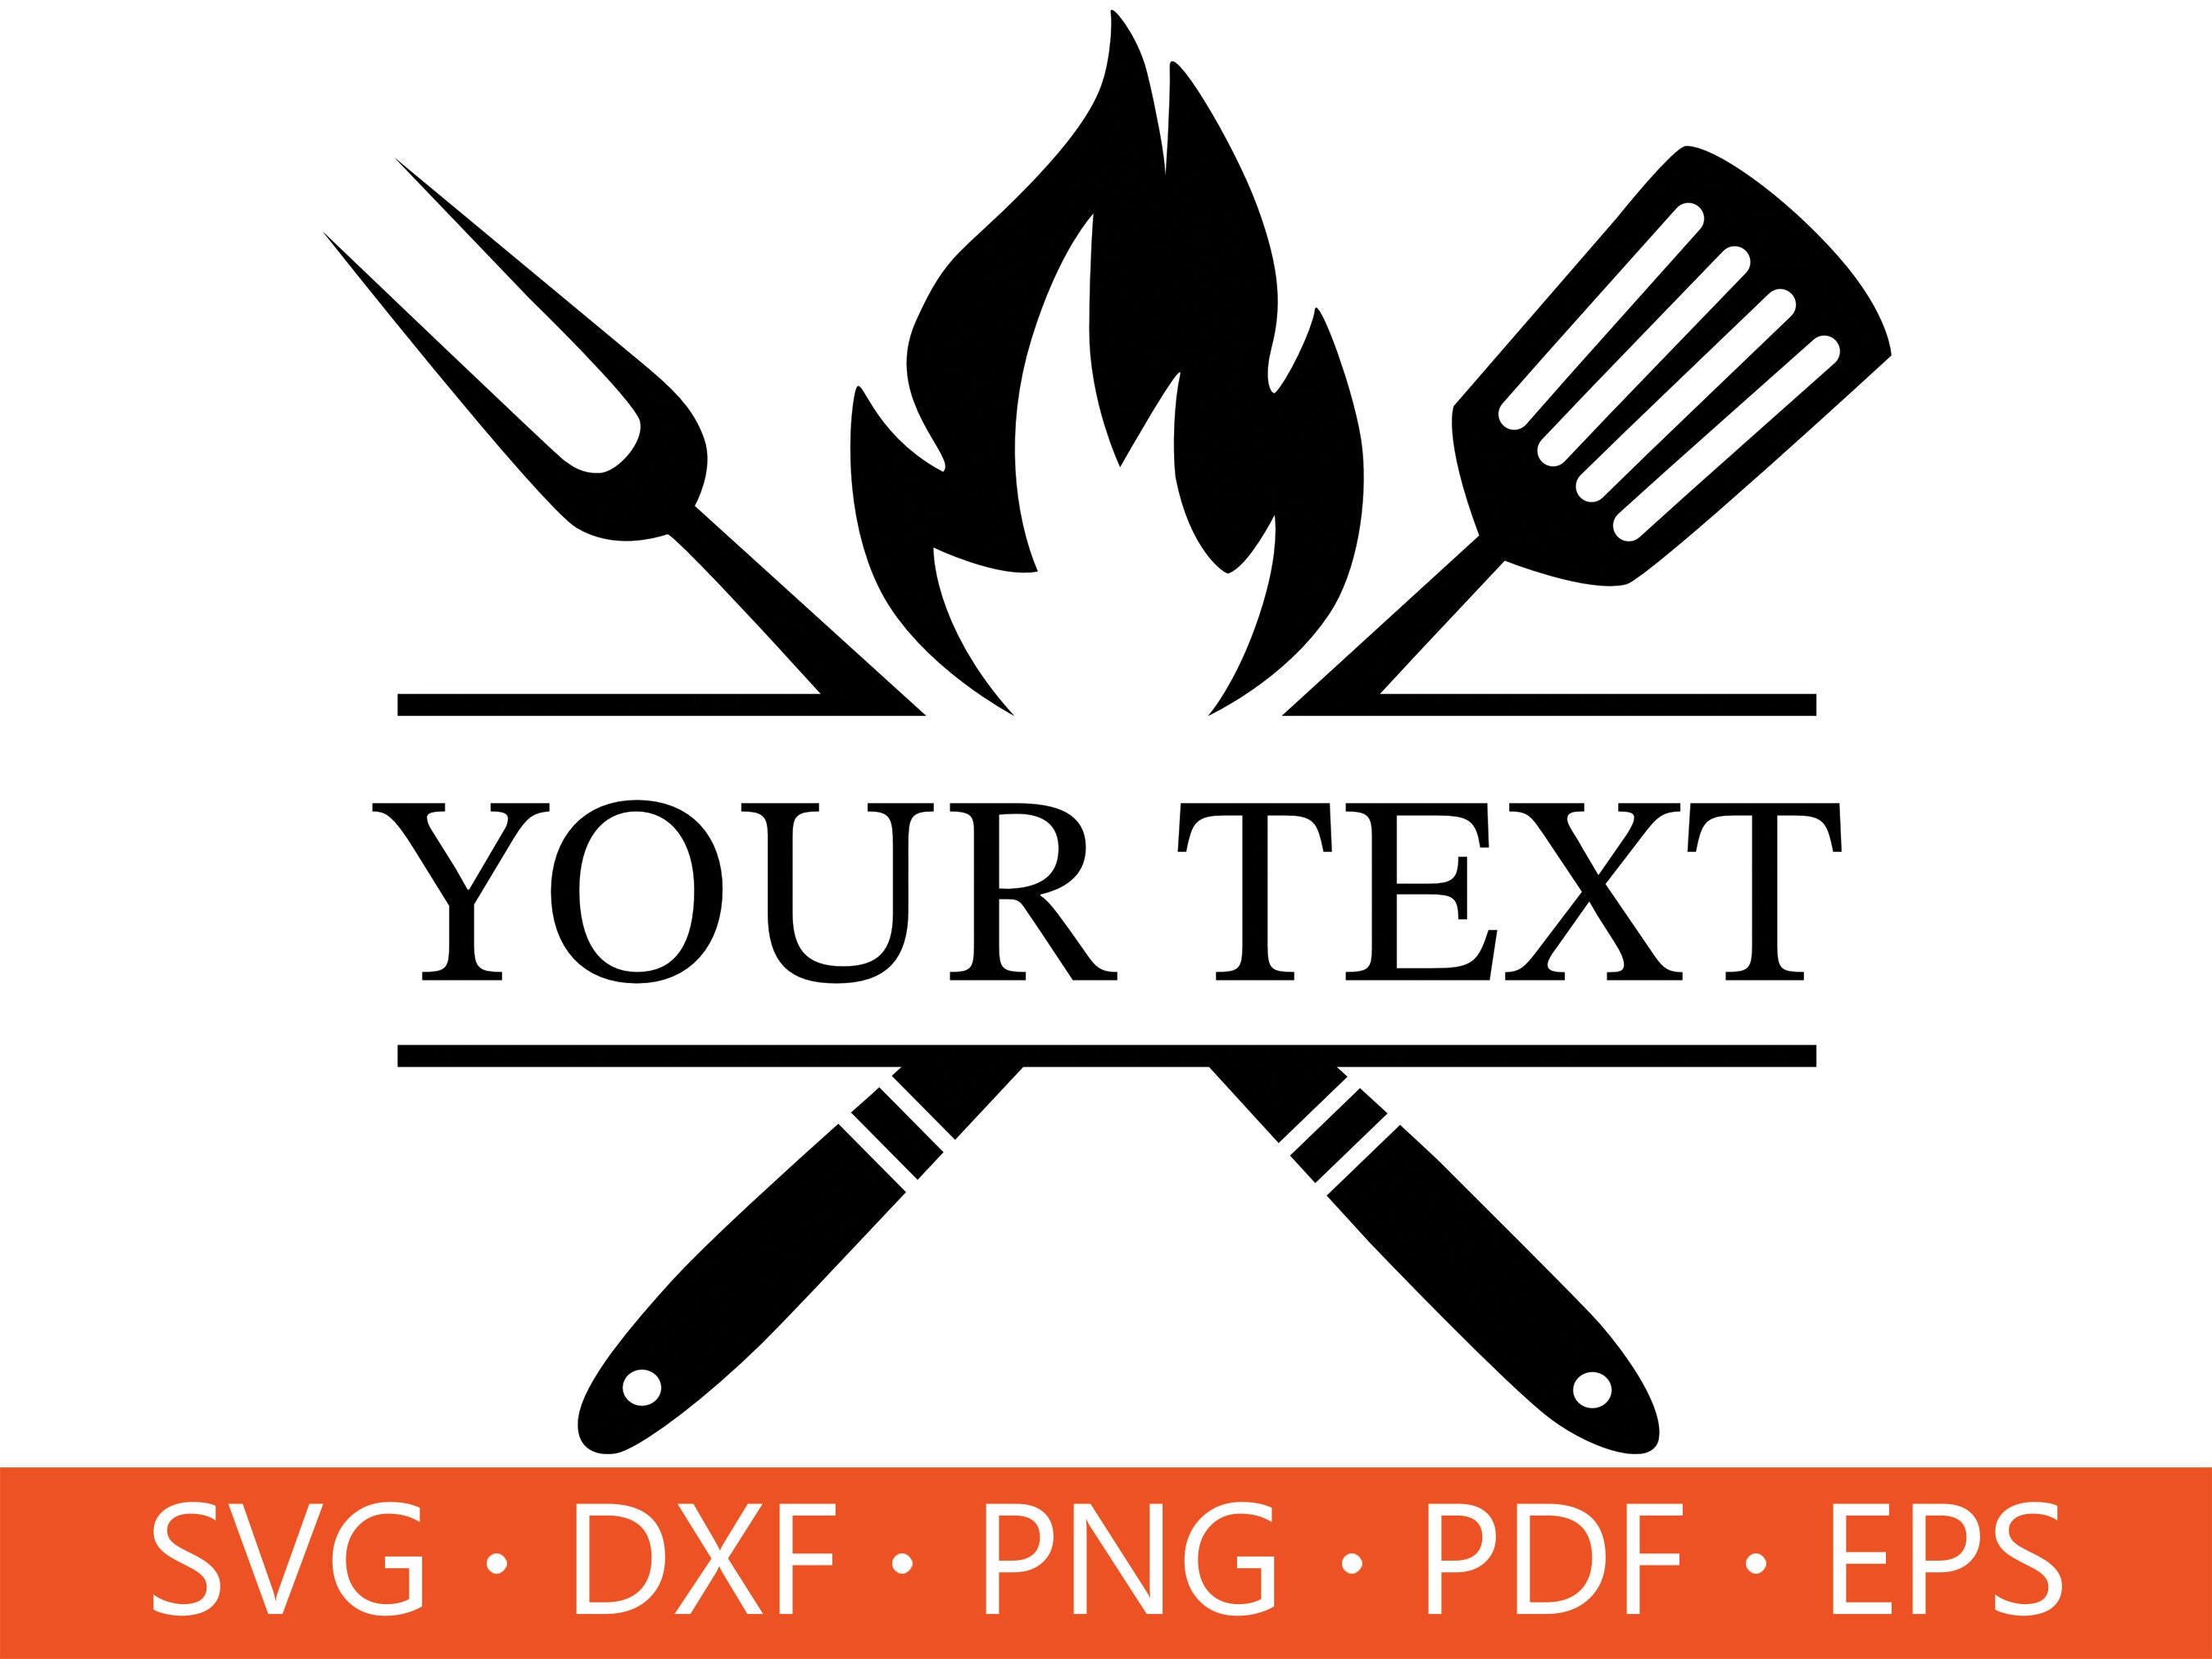 Grilling Utensils SVG Design File